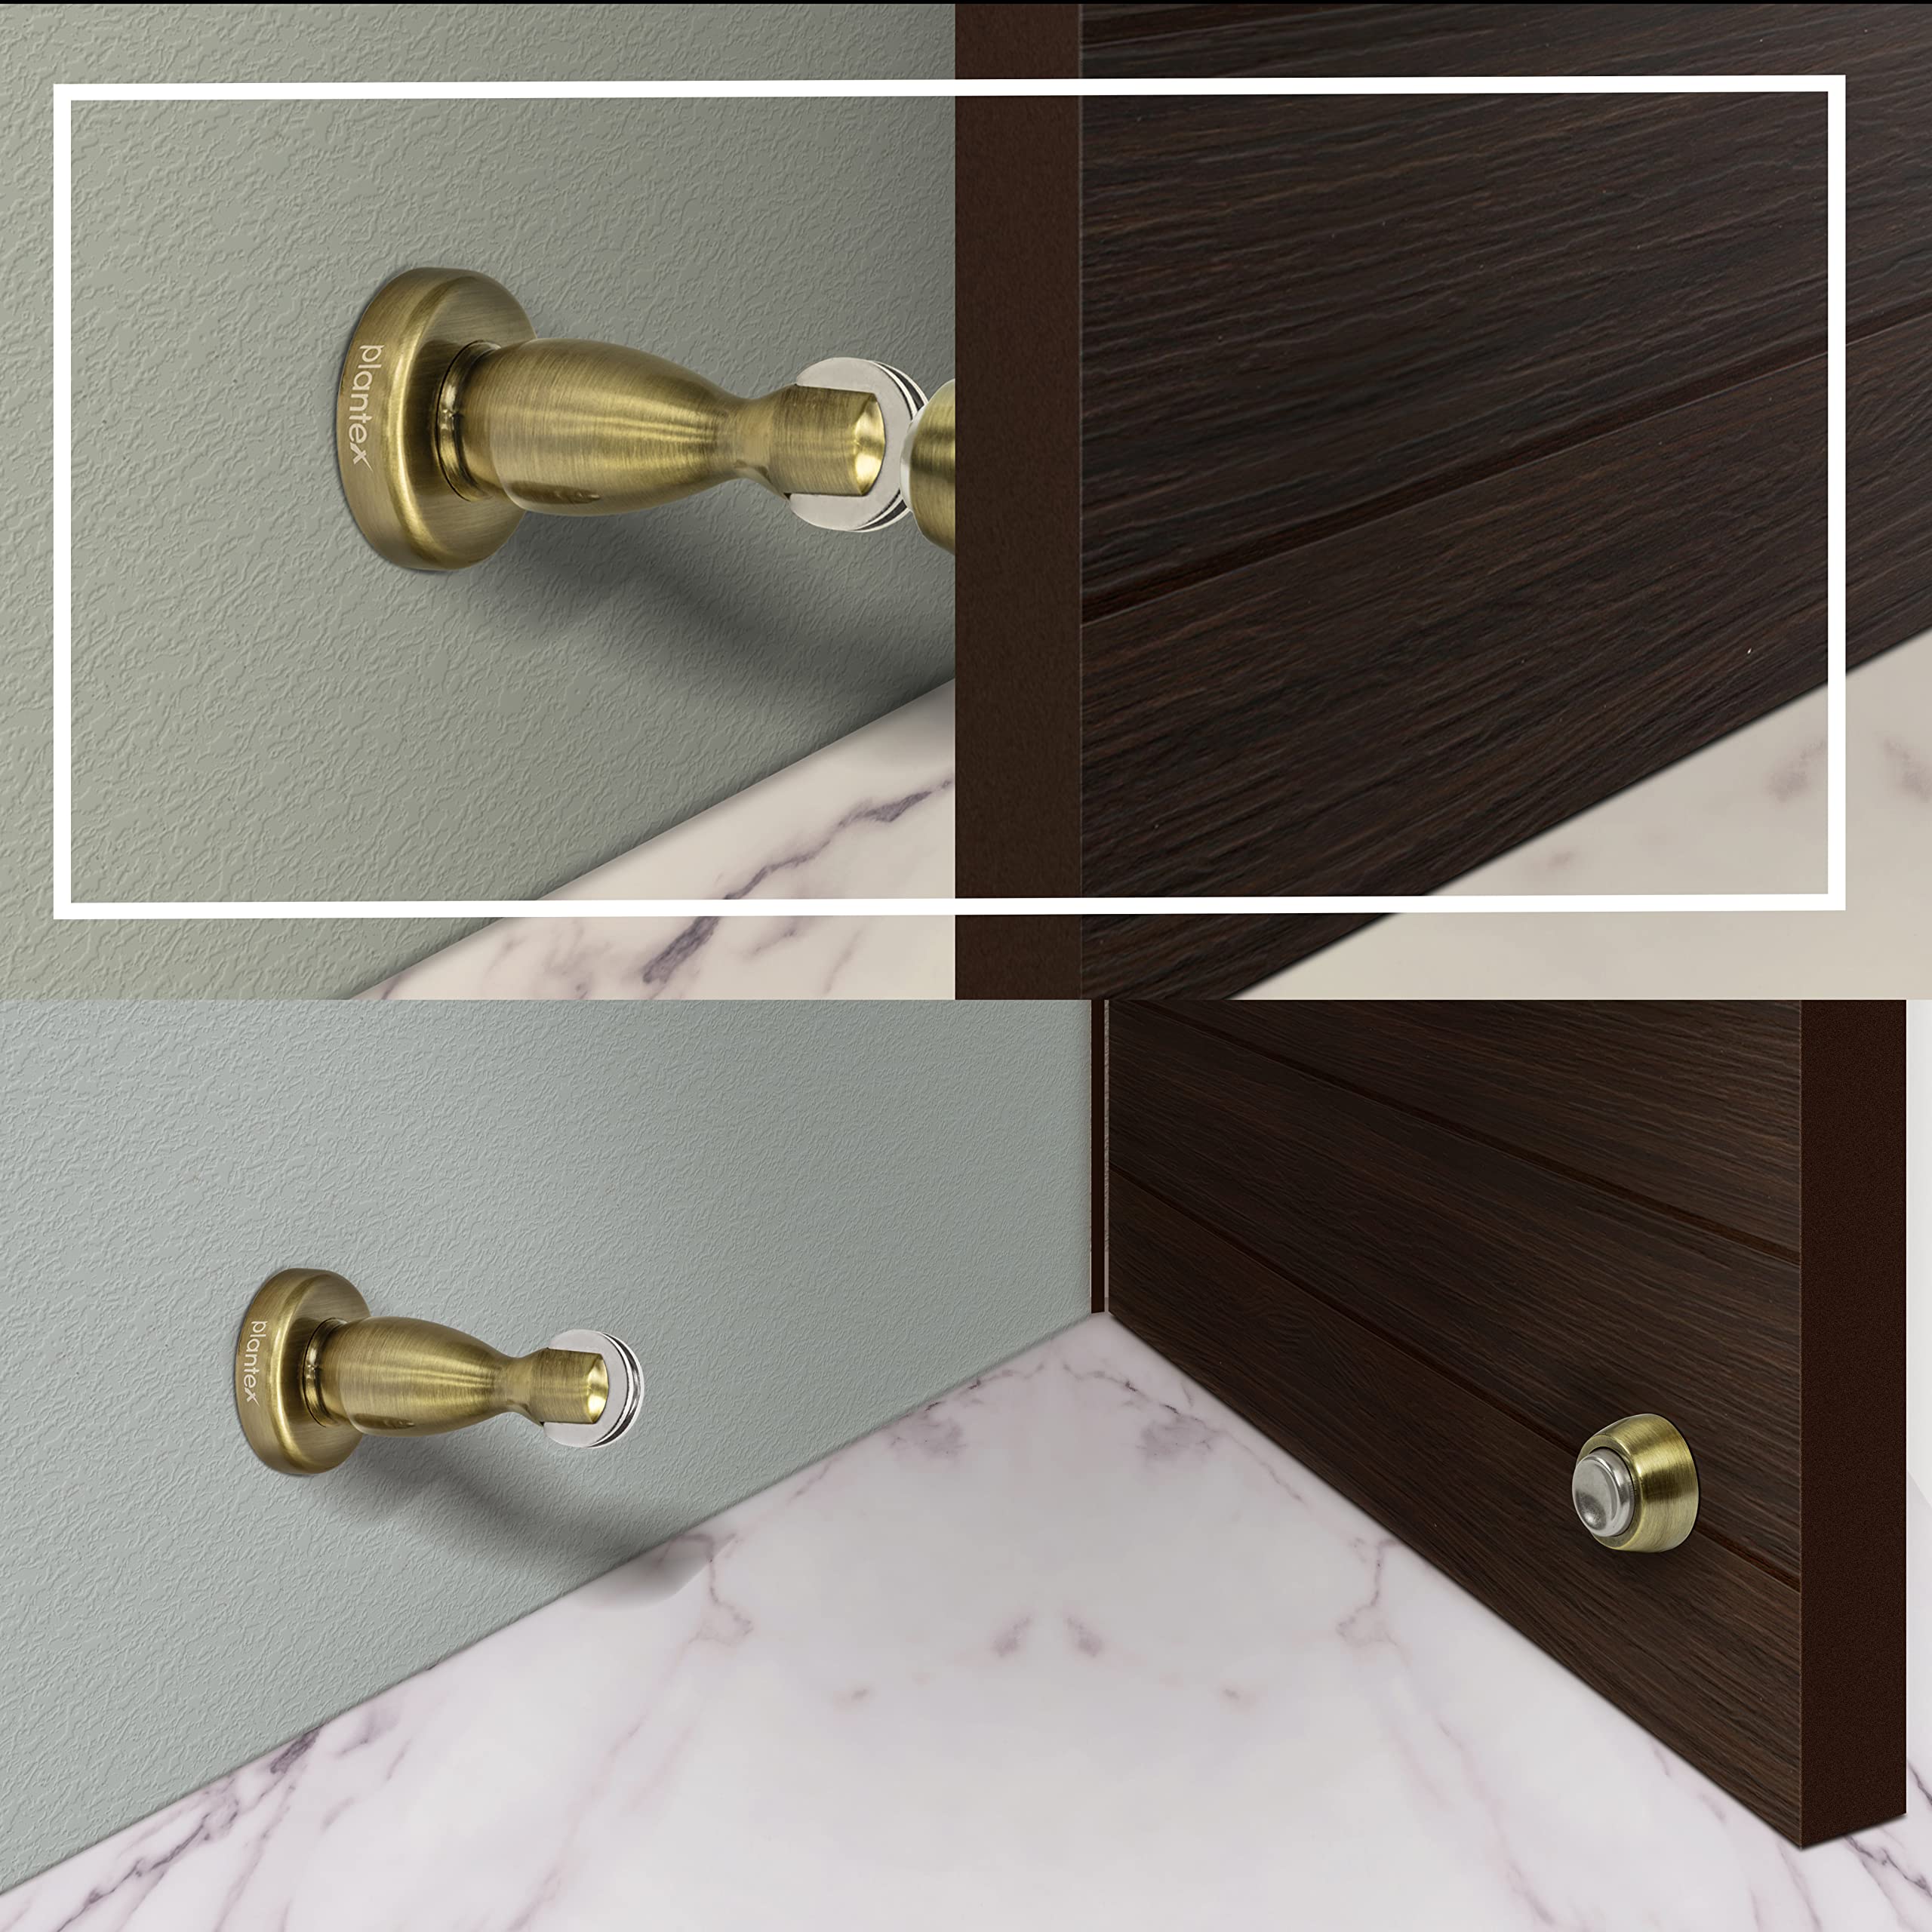 Plantex Magnetic Door Stopper for Home/ 360 Degree Magnet Door Catcher/Door Holder for Main Door/Bedroom/Office and Hotel Door - Pack of 2 (4 inch, Brass Antique)